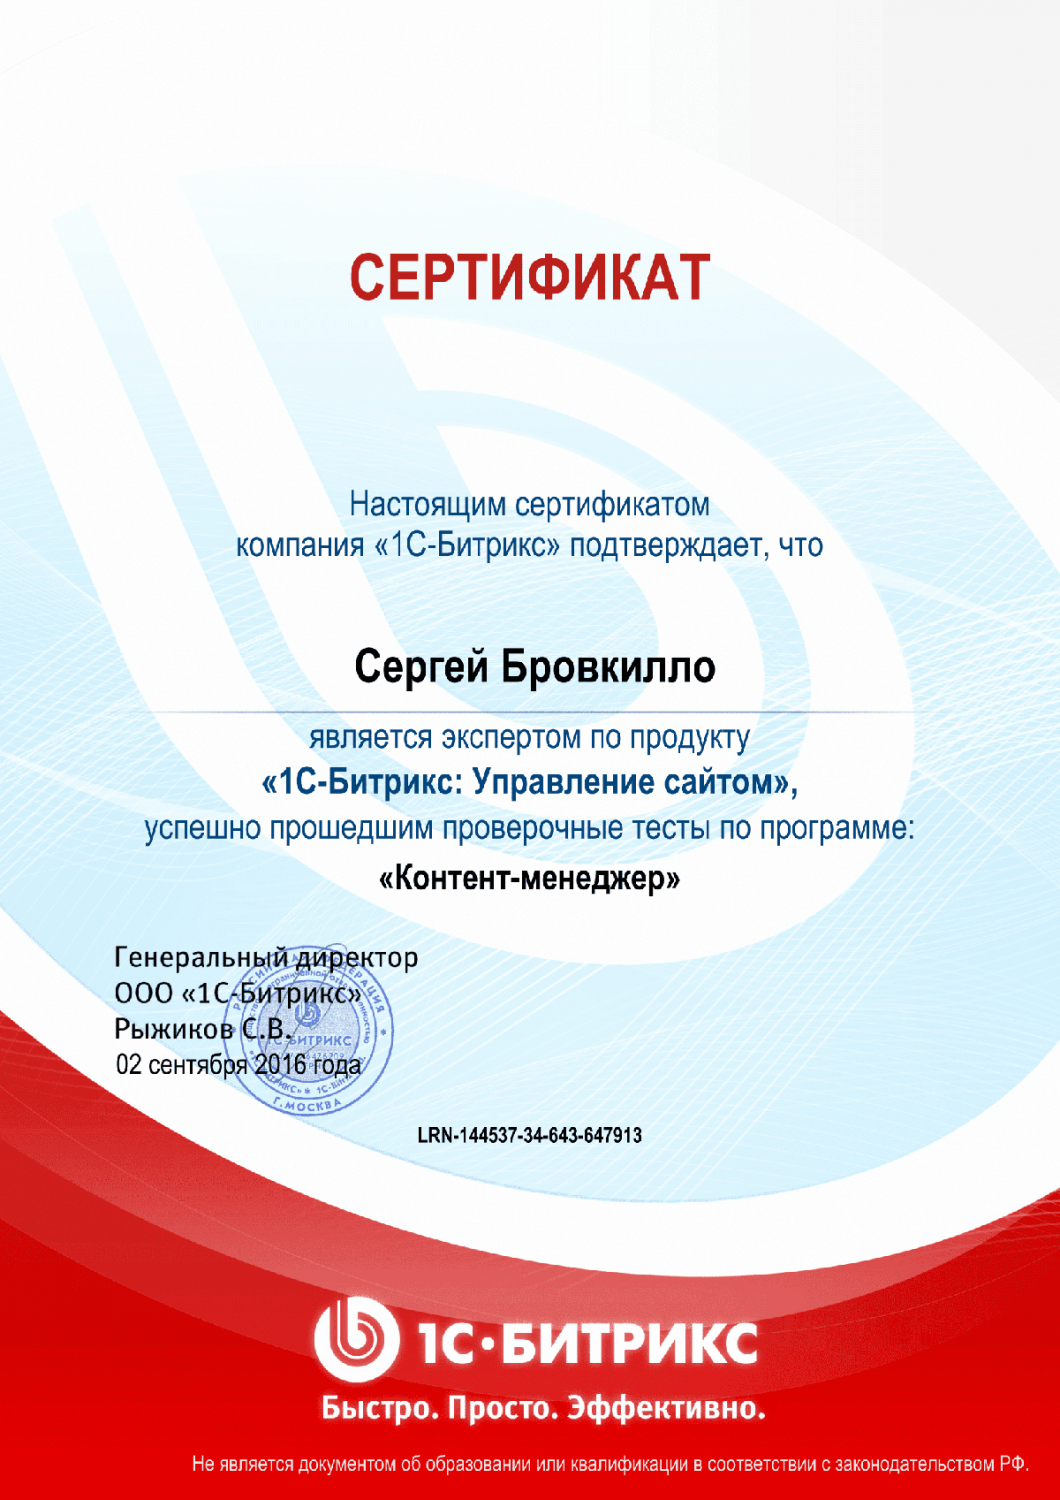 Сертификат эксперта по программе "Контент-менеджер"" в Хабаровска